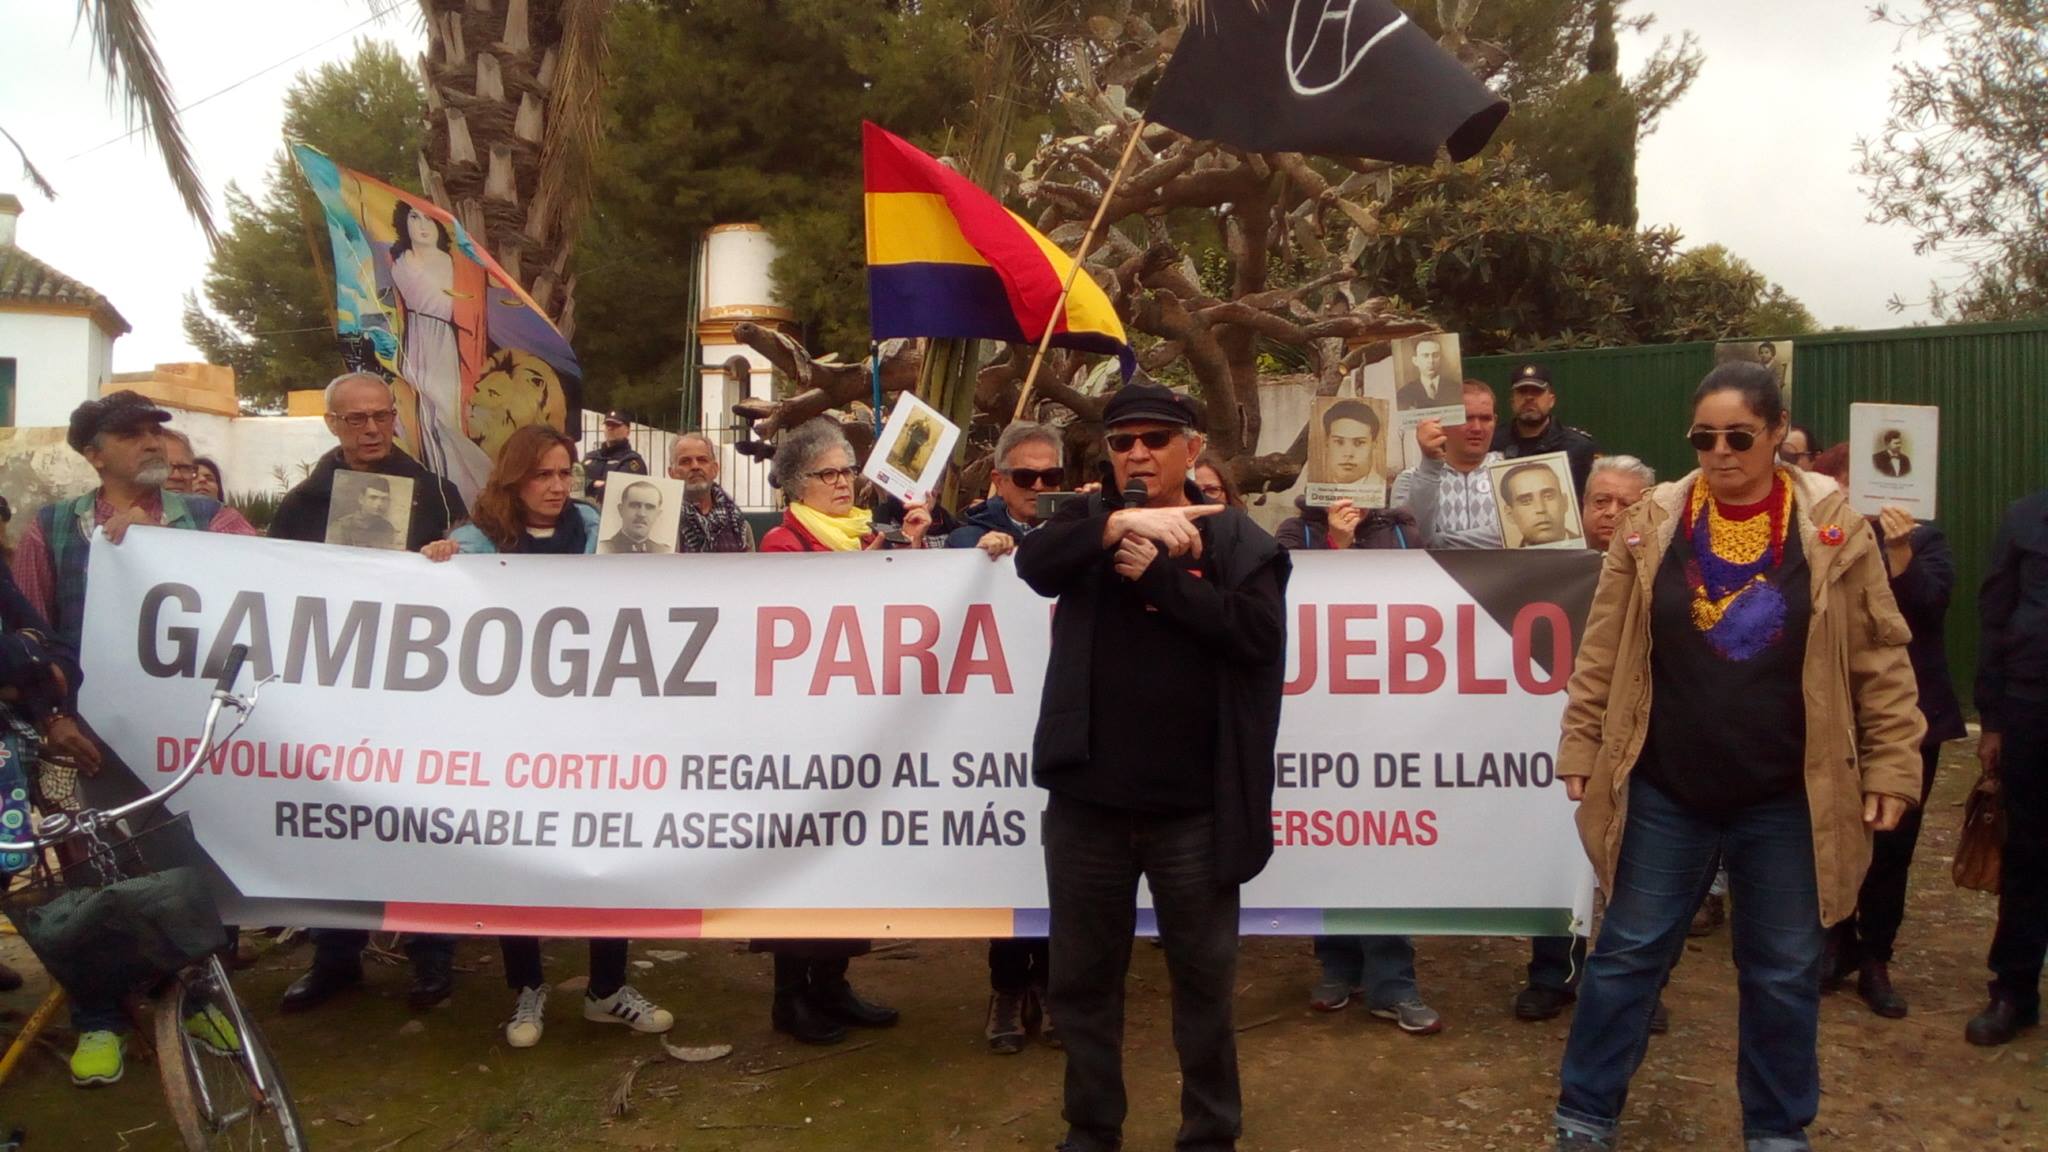 Una protesta en el cortijo de Gambogaz, regalado a Queipo de Llano, en una imagen de archivo.